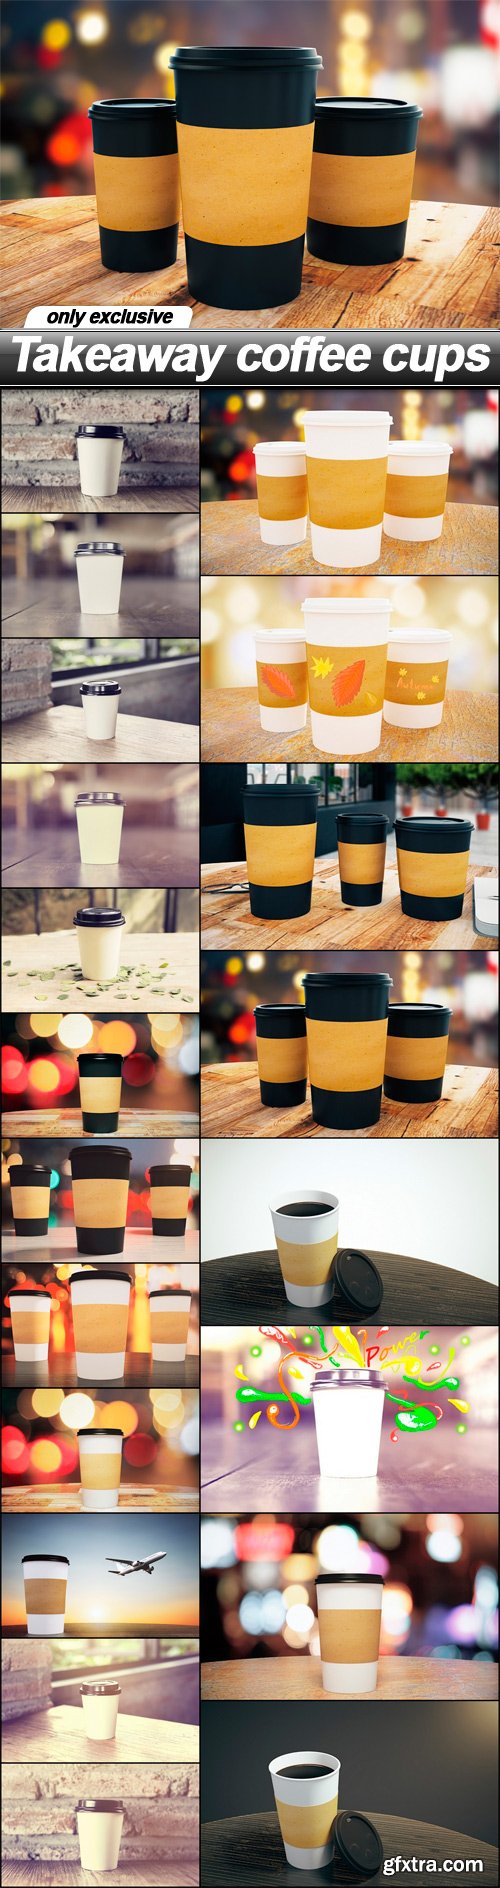 Takeaway coffee cups - 20 UHQ JPEG